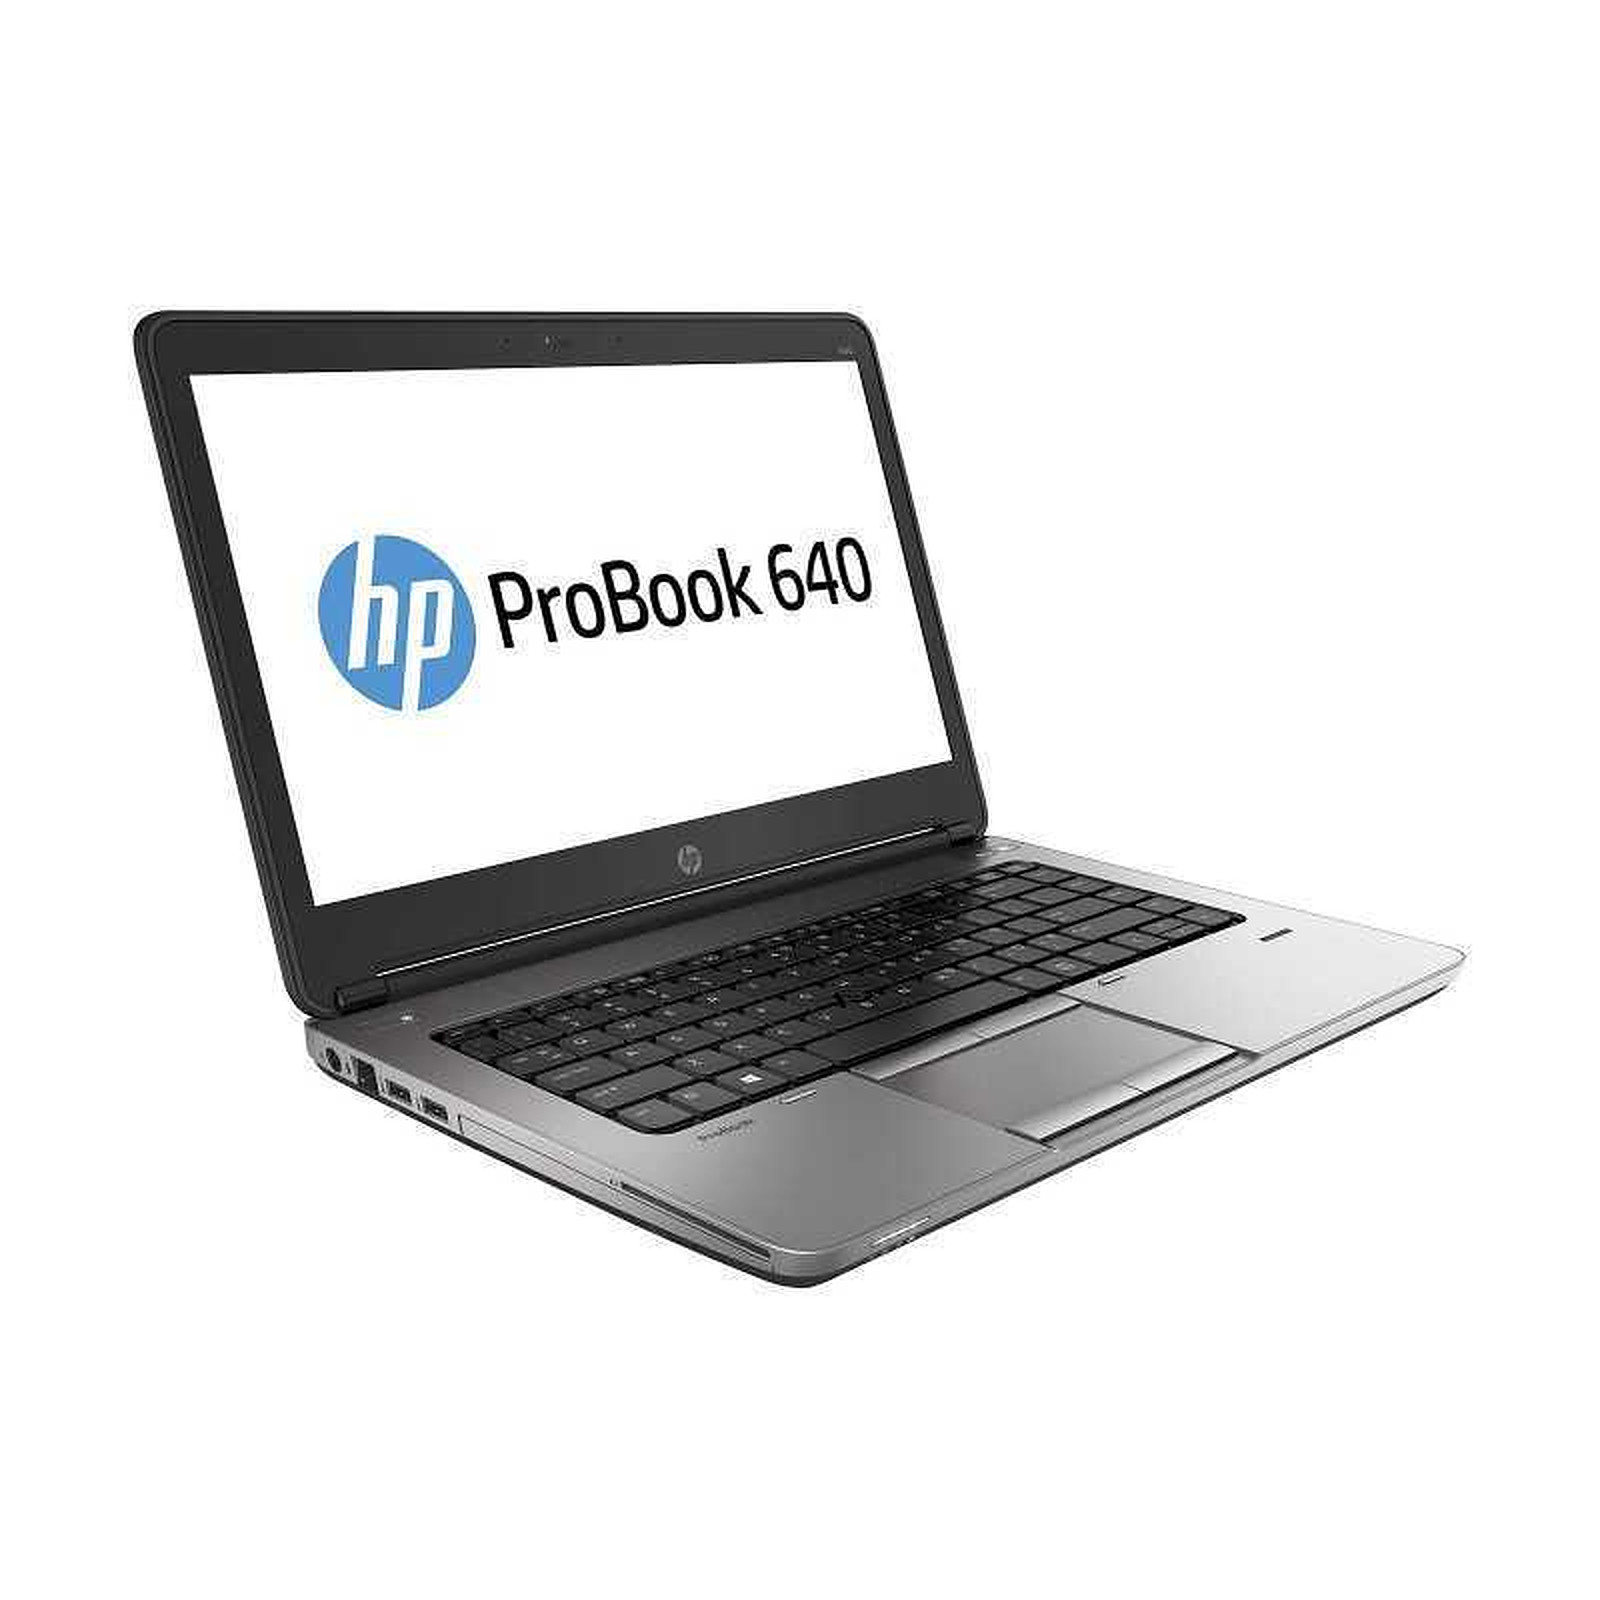 HP ProBook 640 G1 (D9R53AV-3617) (D9R53AV) · Reconditionne - PC portable reconditionne HP